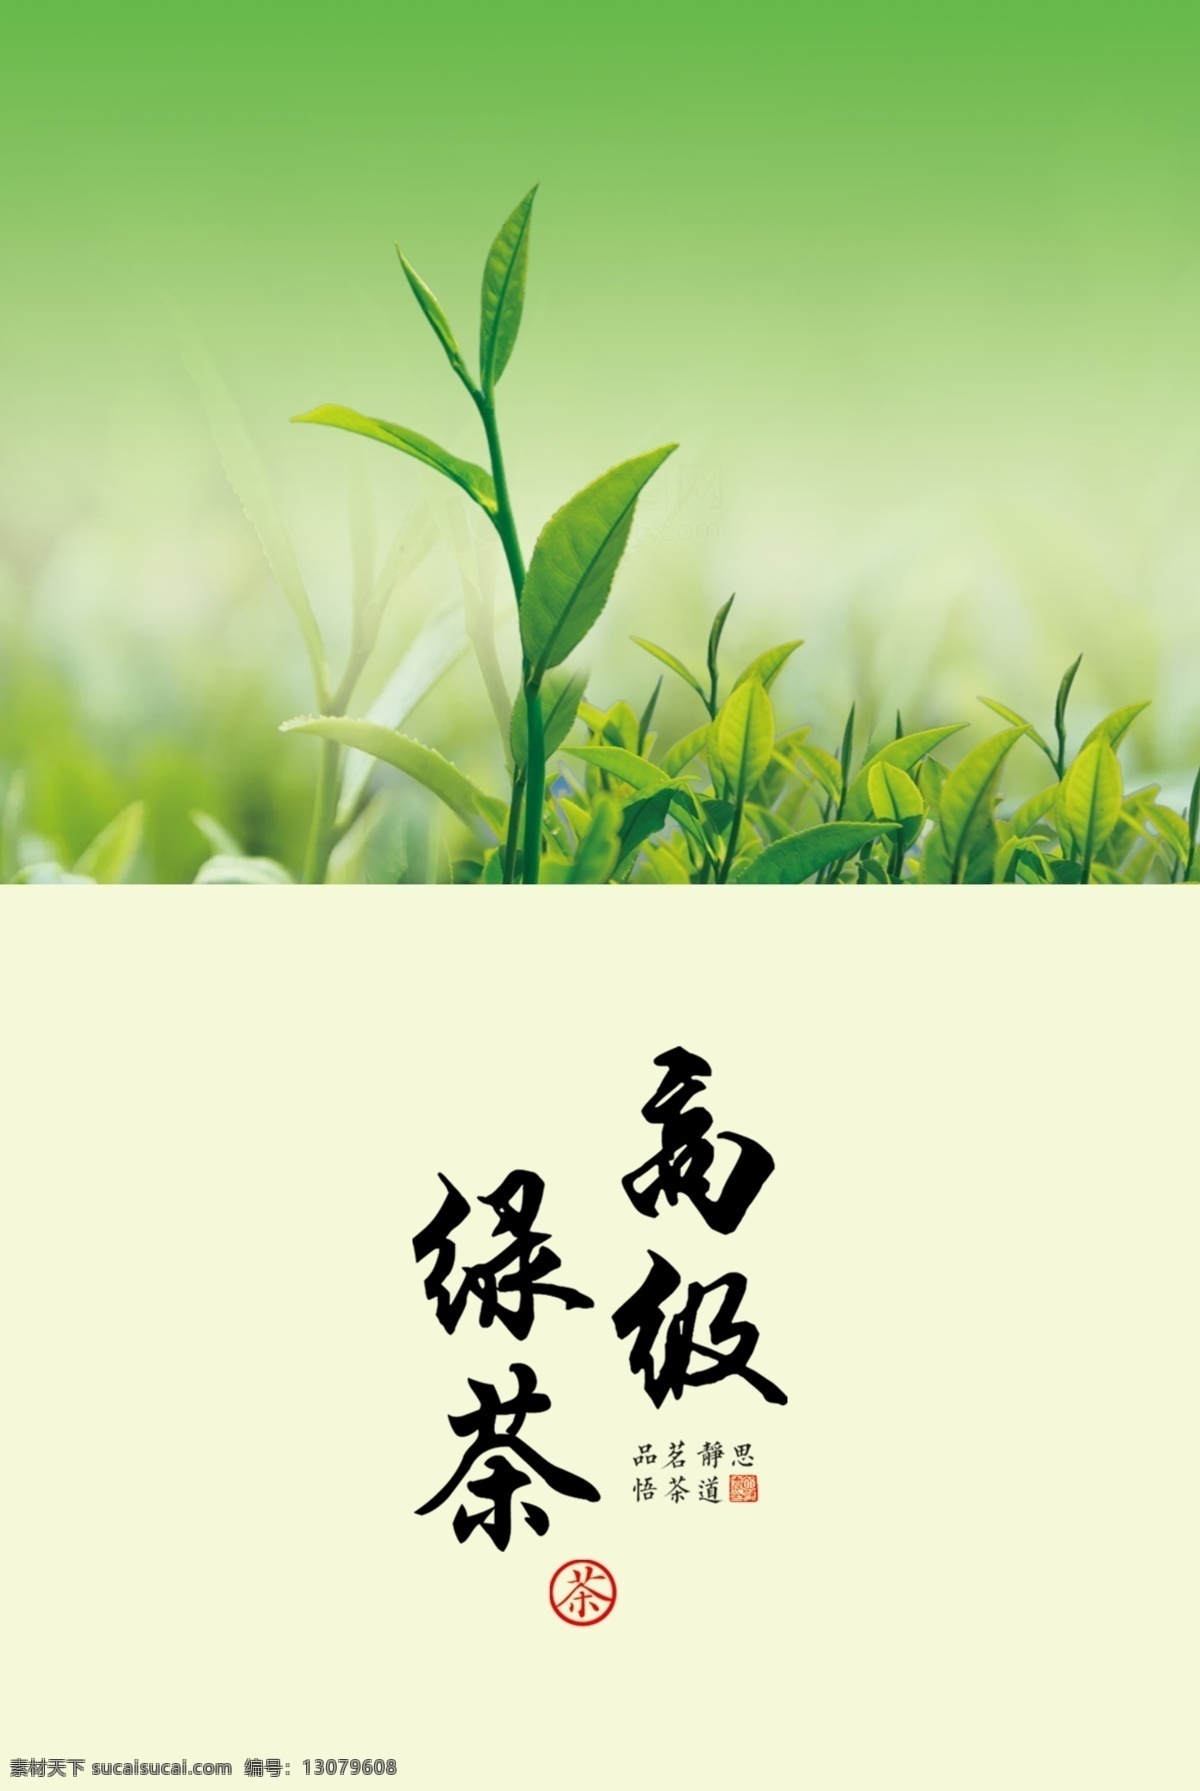 绿茶包装设计 茶叶 嫩芽 茶芽 绿叶 包装设计 分层